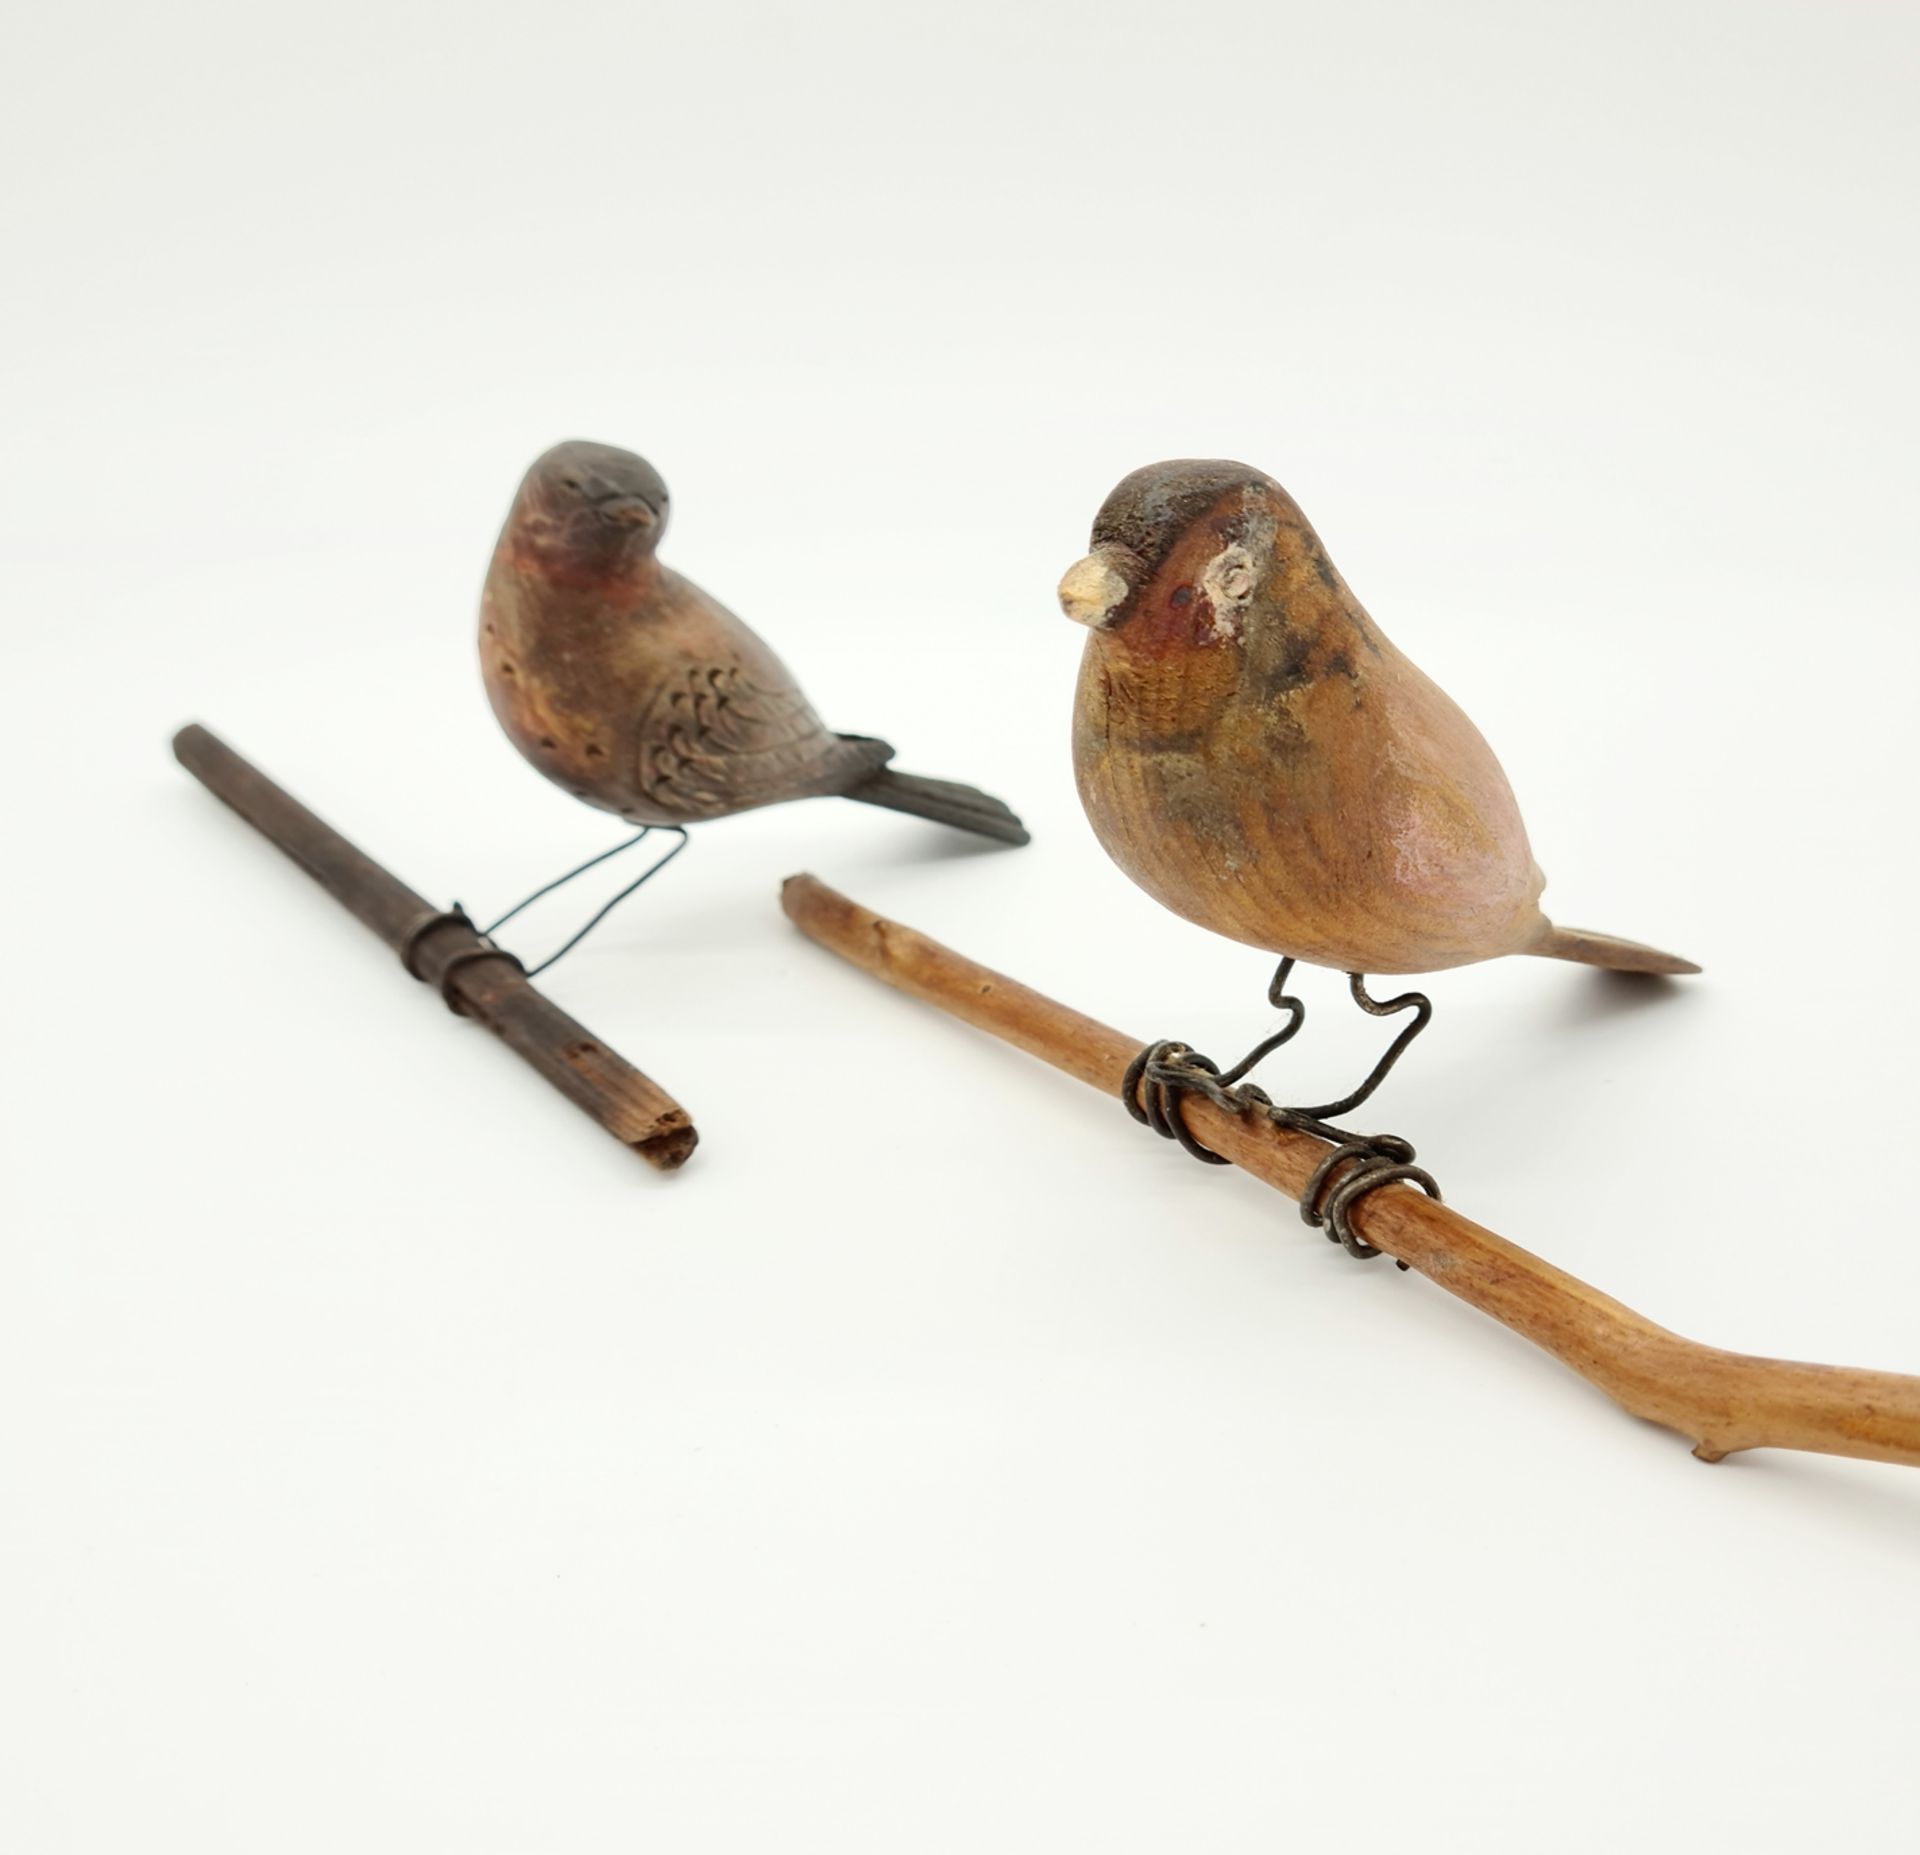 Vögel, Holz bunt bemalt, Vogellänge je: 10cm, 12 ,5 cm, Ende 19. Jhd,